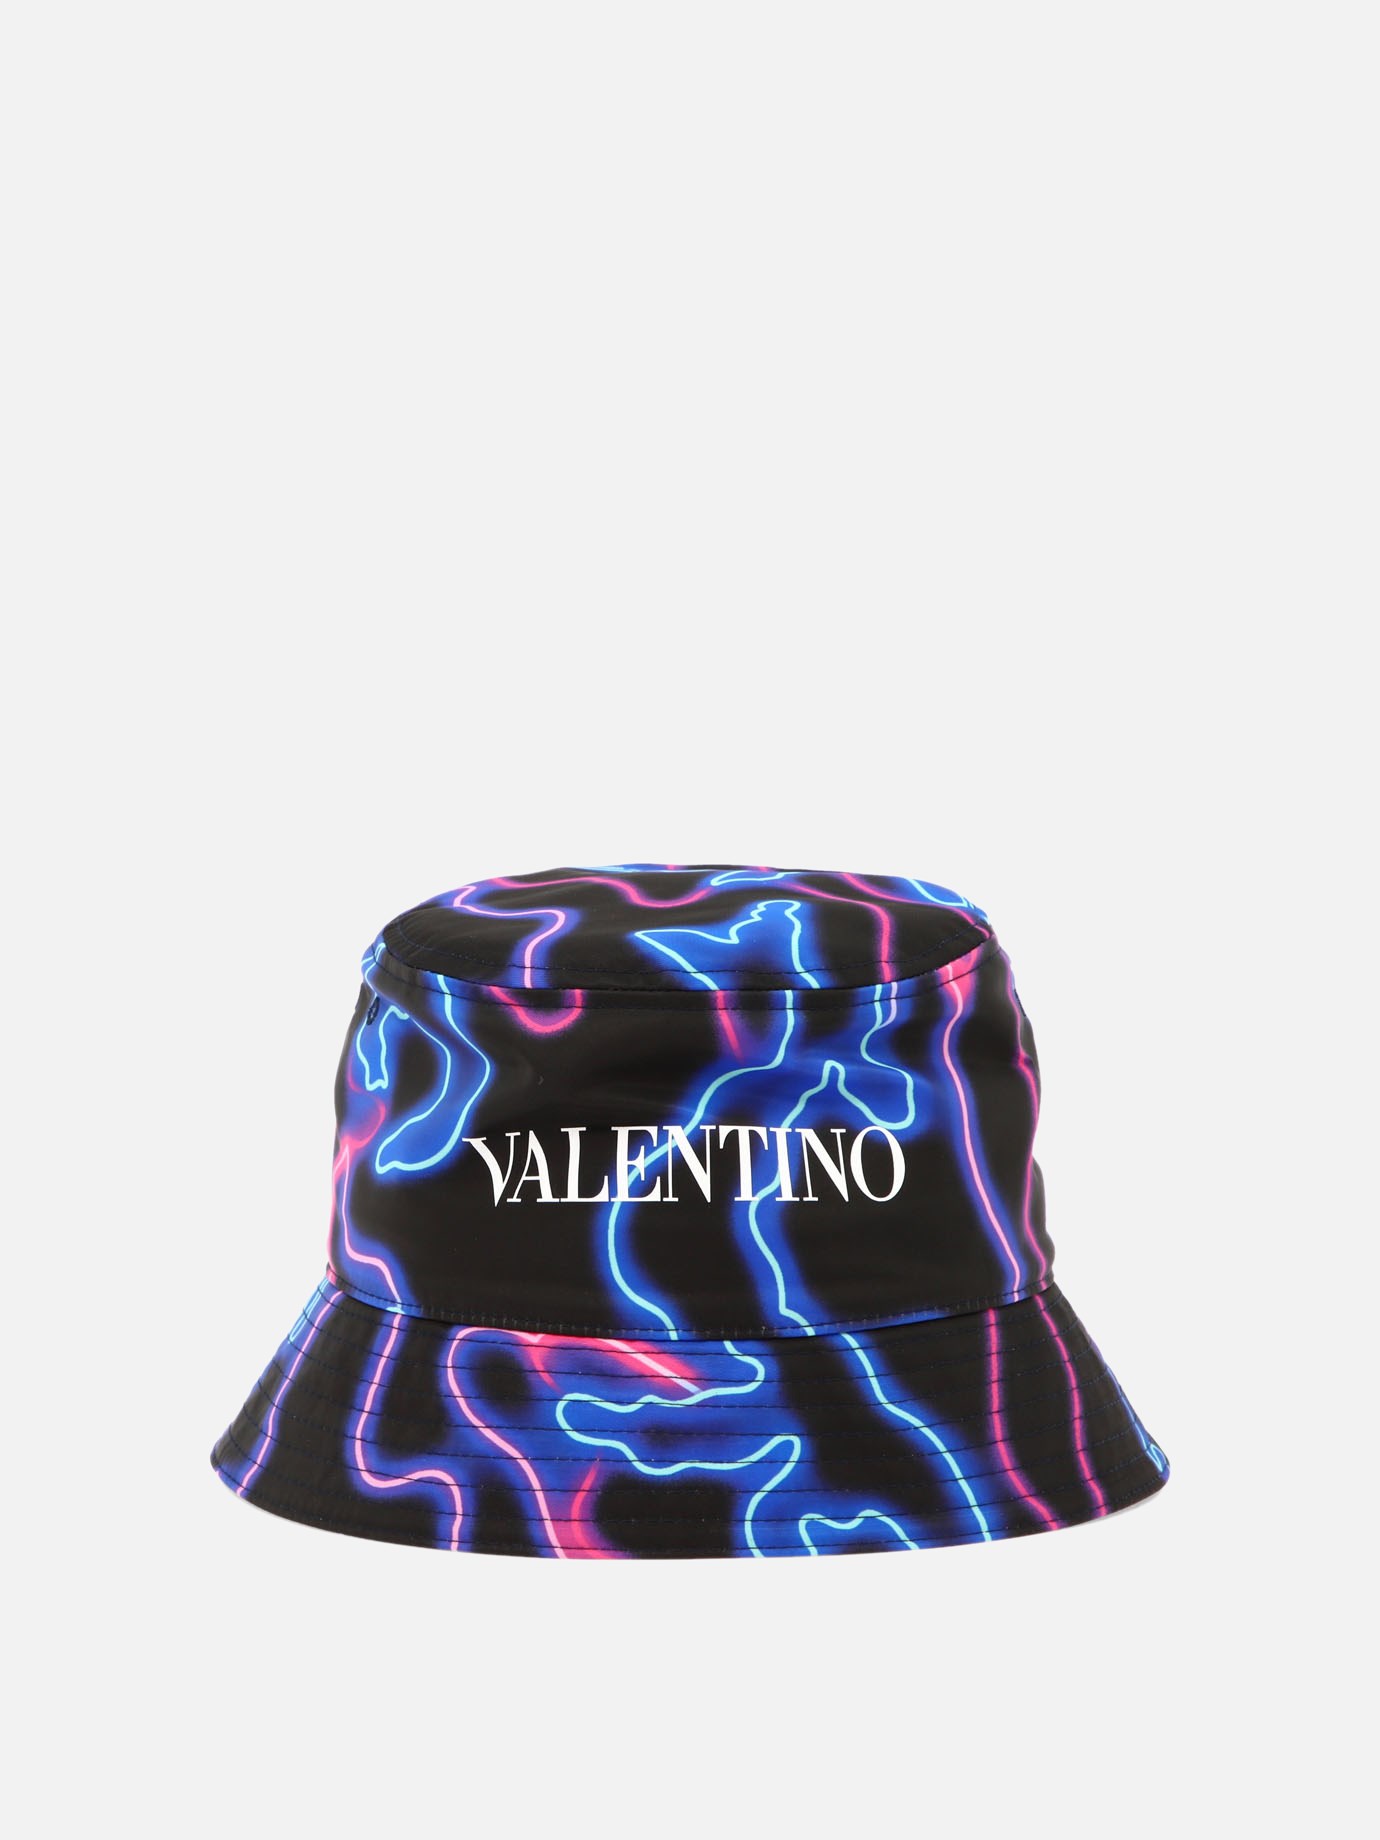  Neon Camou  bucket hat by Valentino Garavani